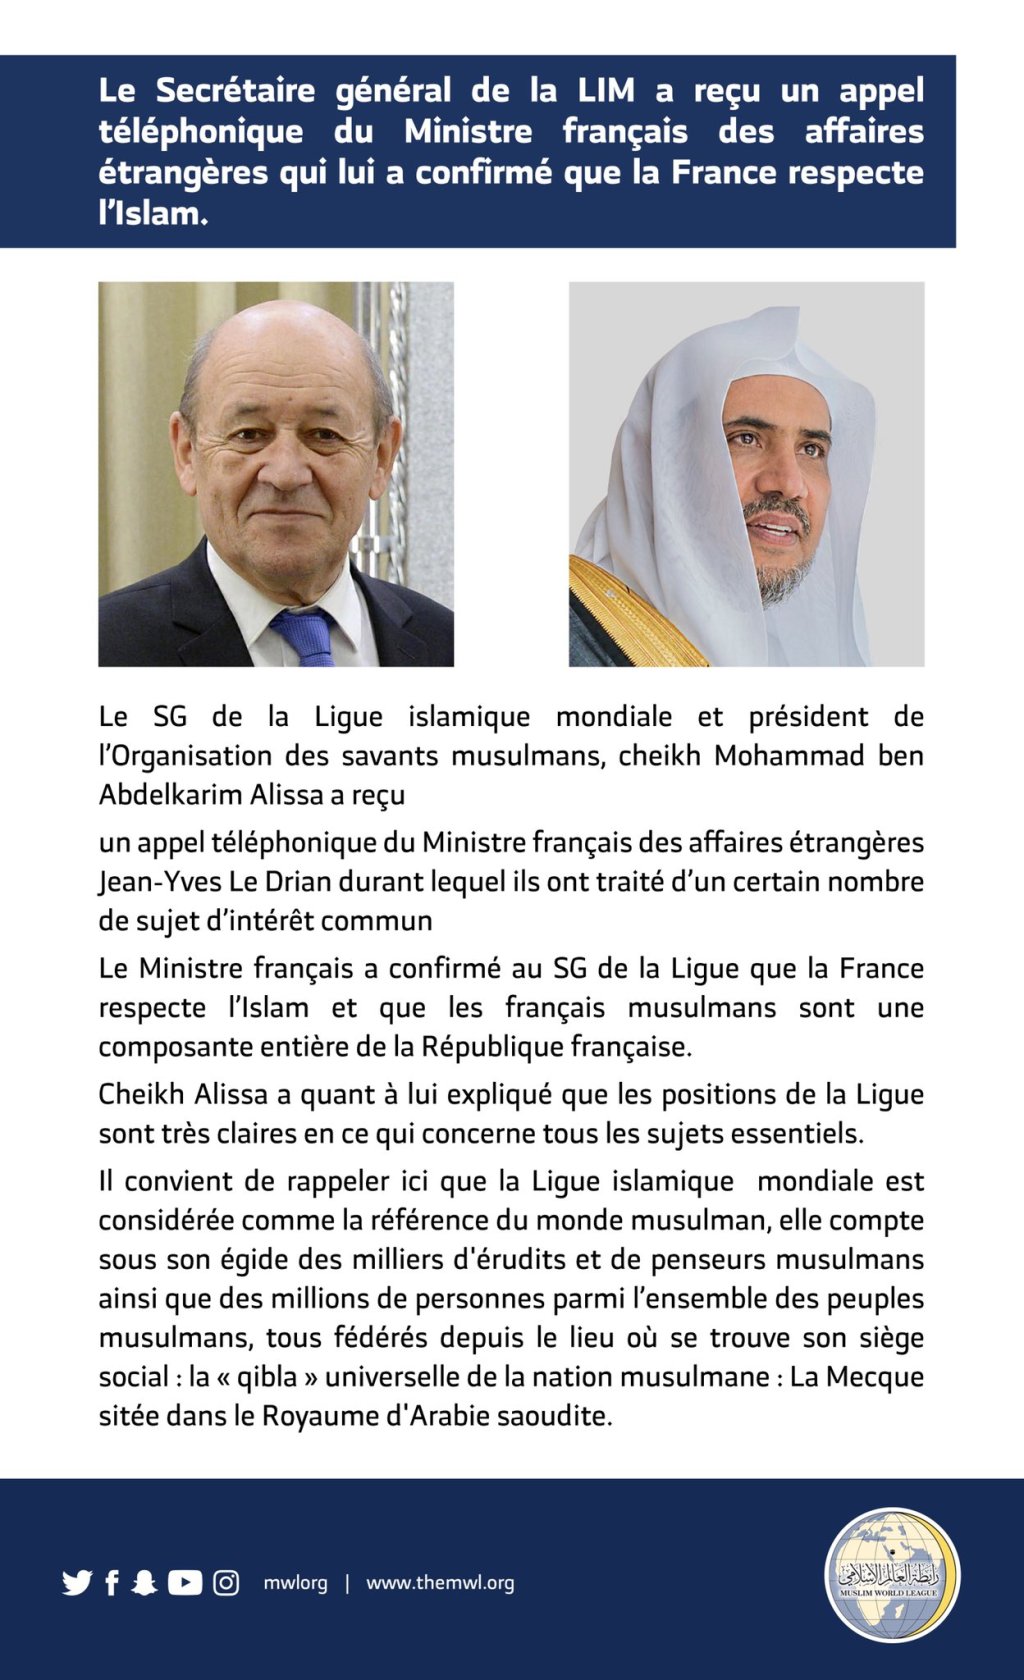 Le SG de la Ligue Islamique Mondiale a reçu un appel téléphonique du Ministre français des affaires étrangères qui lui a confirmé que la France respecte l’Islam :